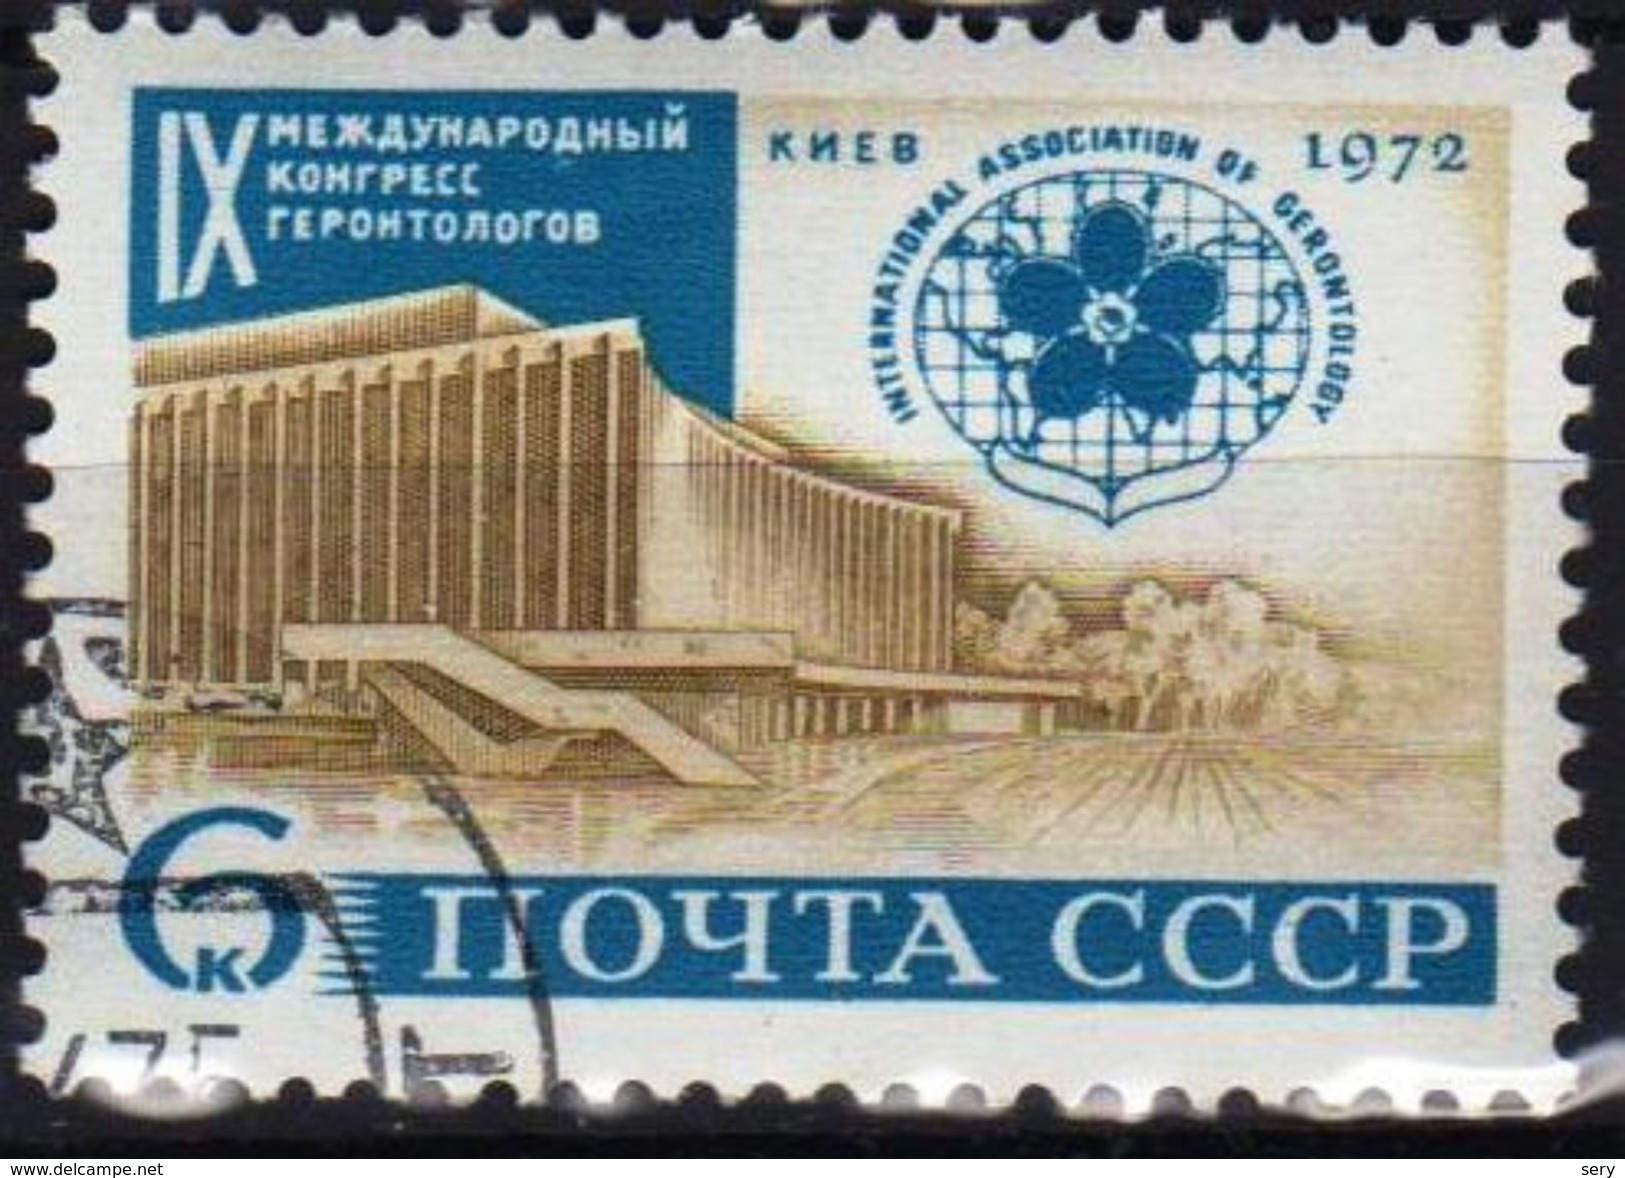 USSR 1972  1 V Used    9 International Congress Of Gerontology - Medicine